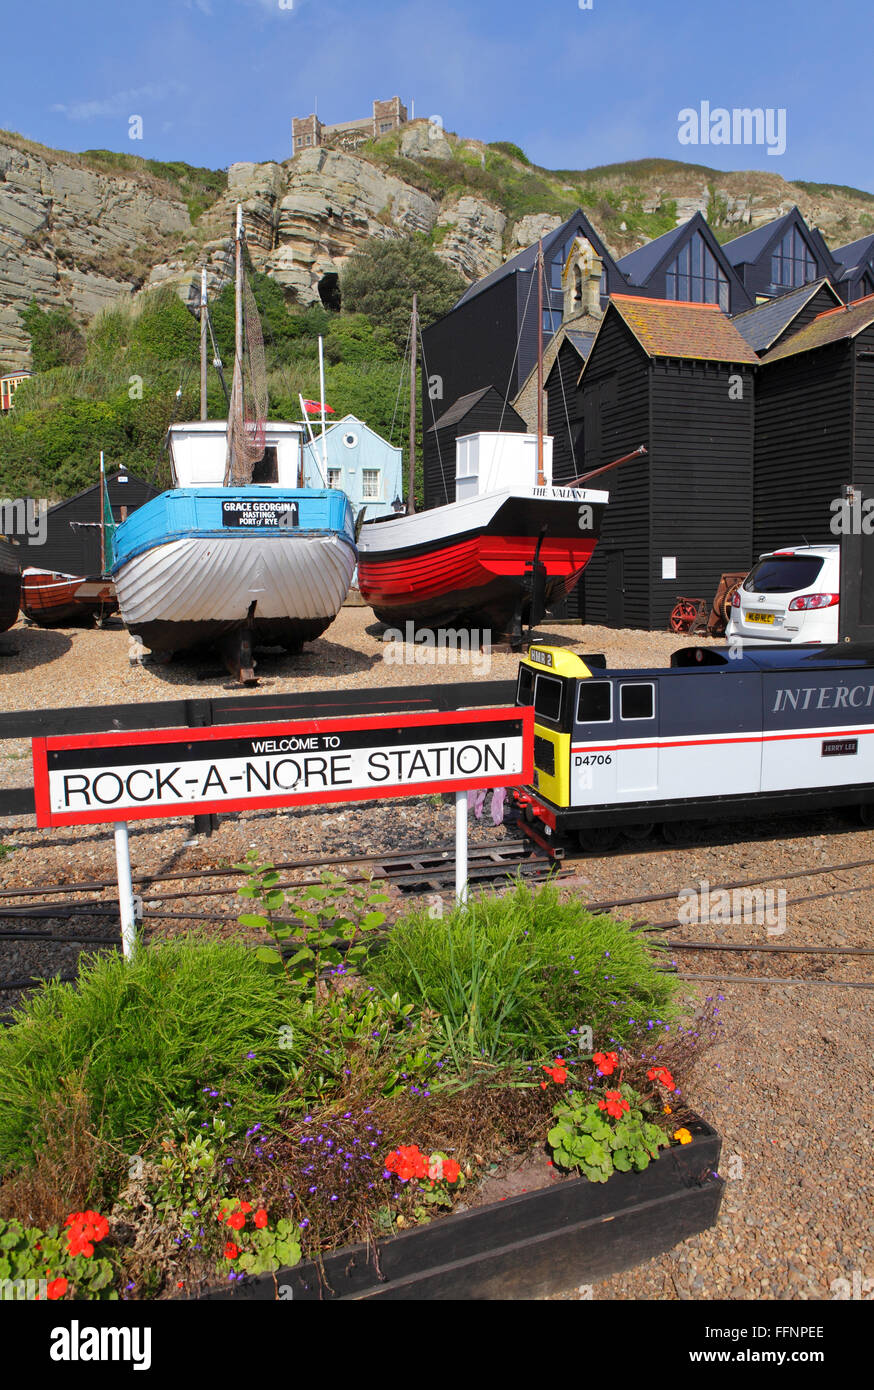 Rock-a-Nore estación ferroviaria en miniatura, en frente de los barcos históricos en el centro de patrimonio marítimo Hastings East Sussex, UK Foto de stock